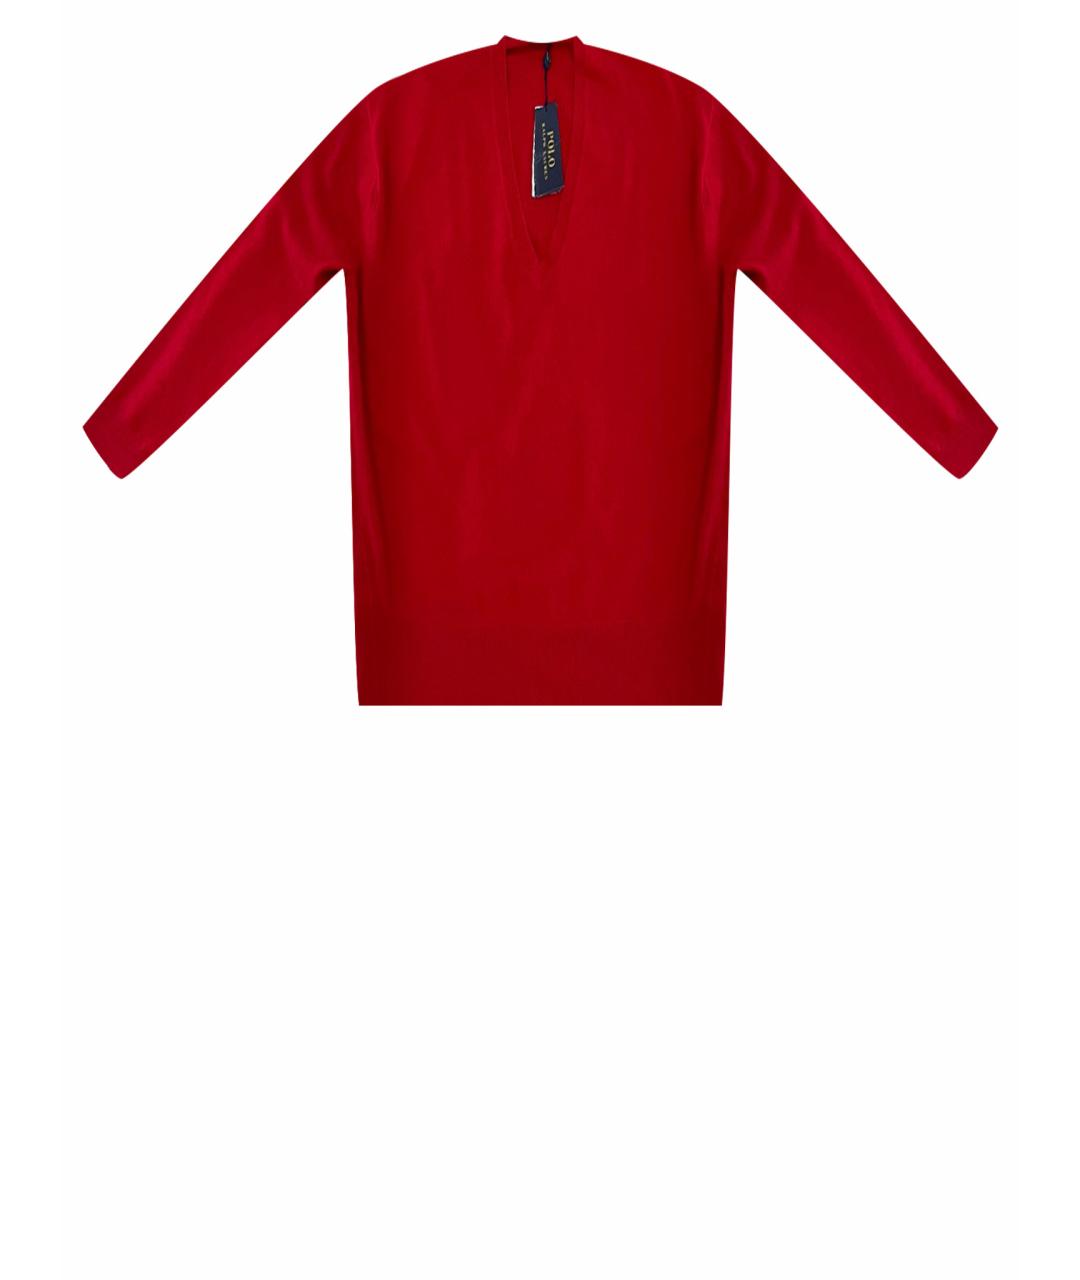 POLO RALPH LAUREN Красный кашемировый джемпер / свитер, фото 1